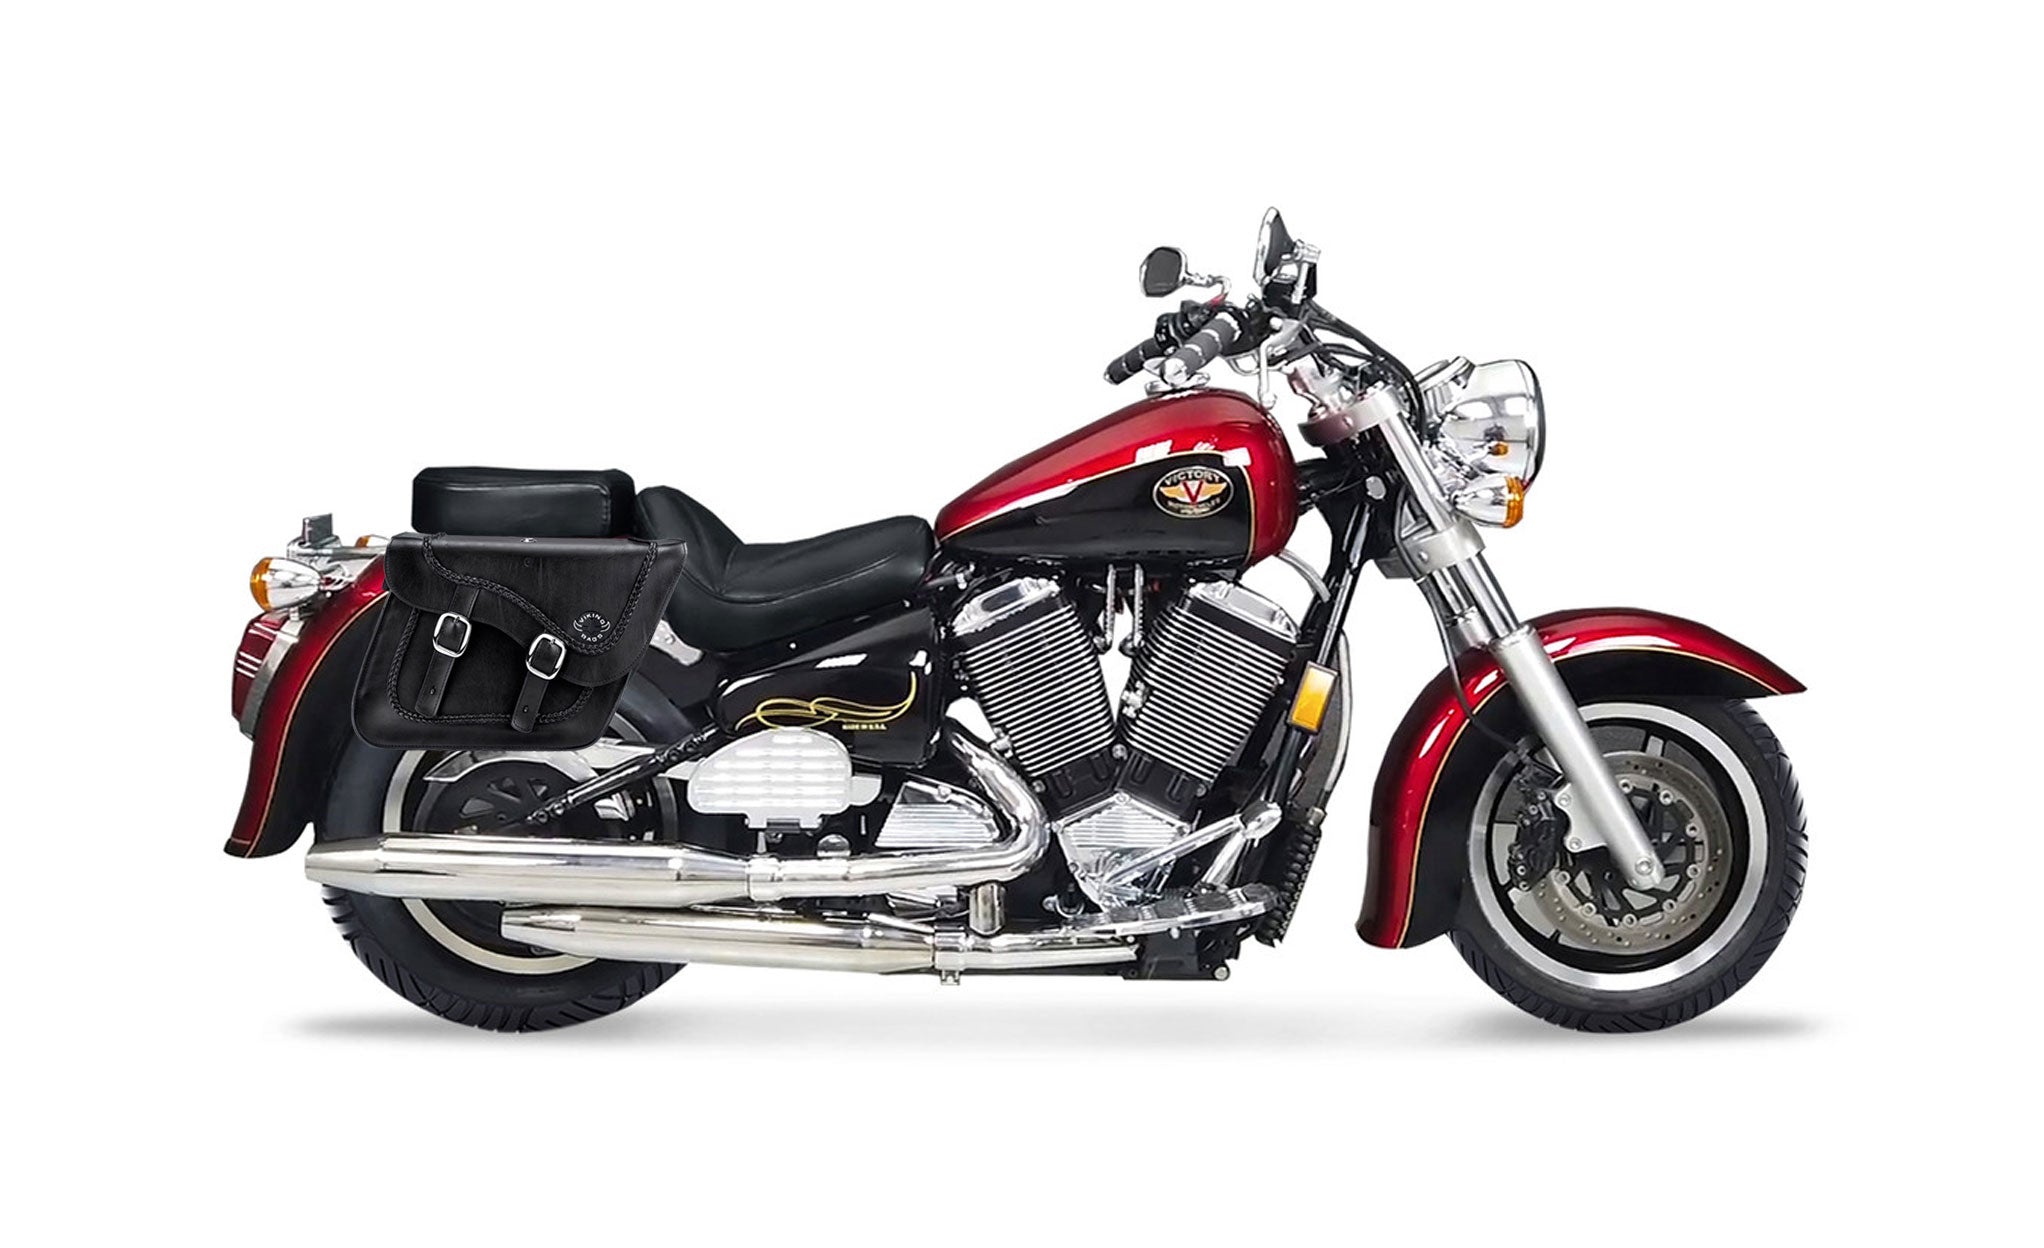 Viking Americano Victory V92C Braided Large Leather Motorcycle Saddlebags on Bike Photo @expand